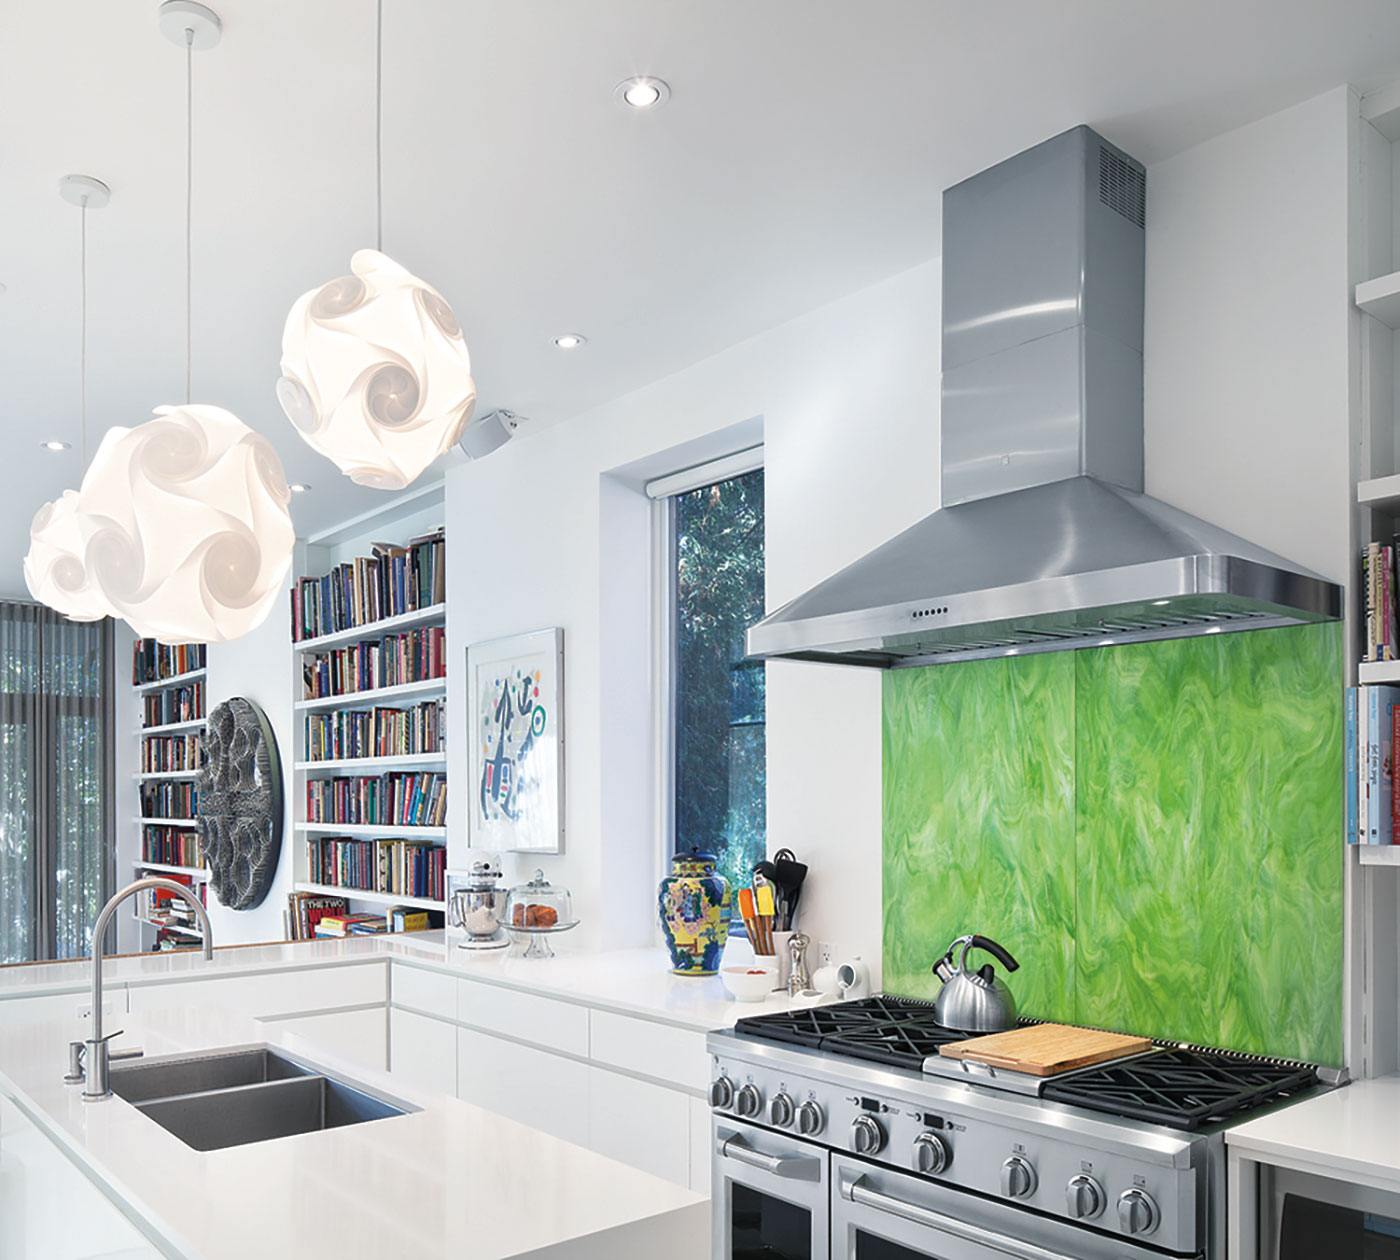 modern kitchen design with a green backsplash - Annex renovation